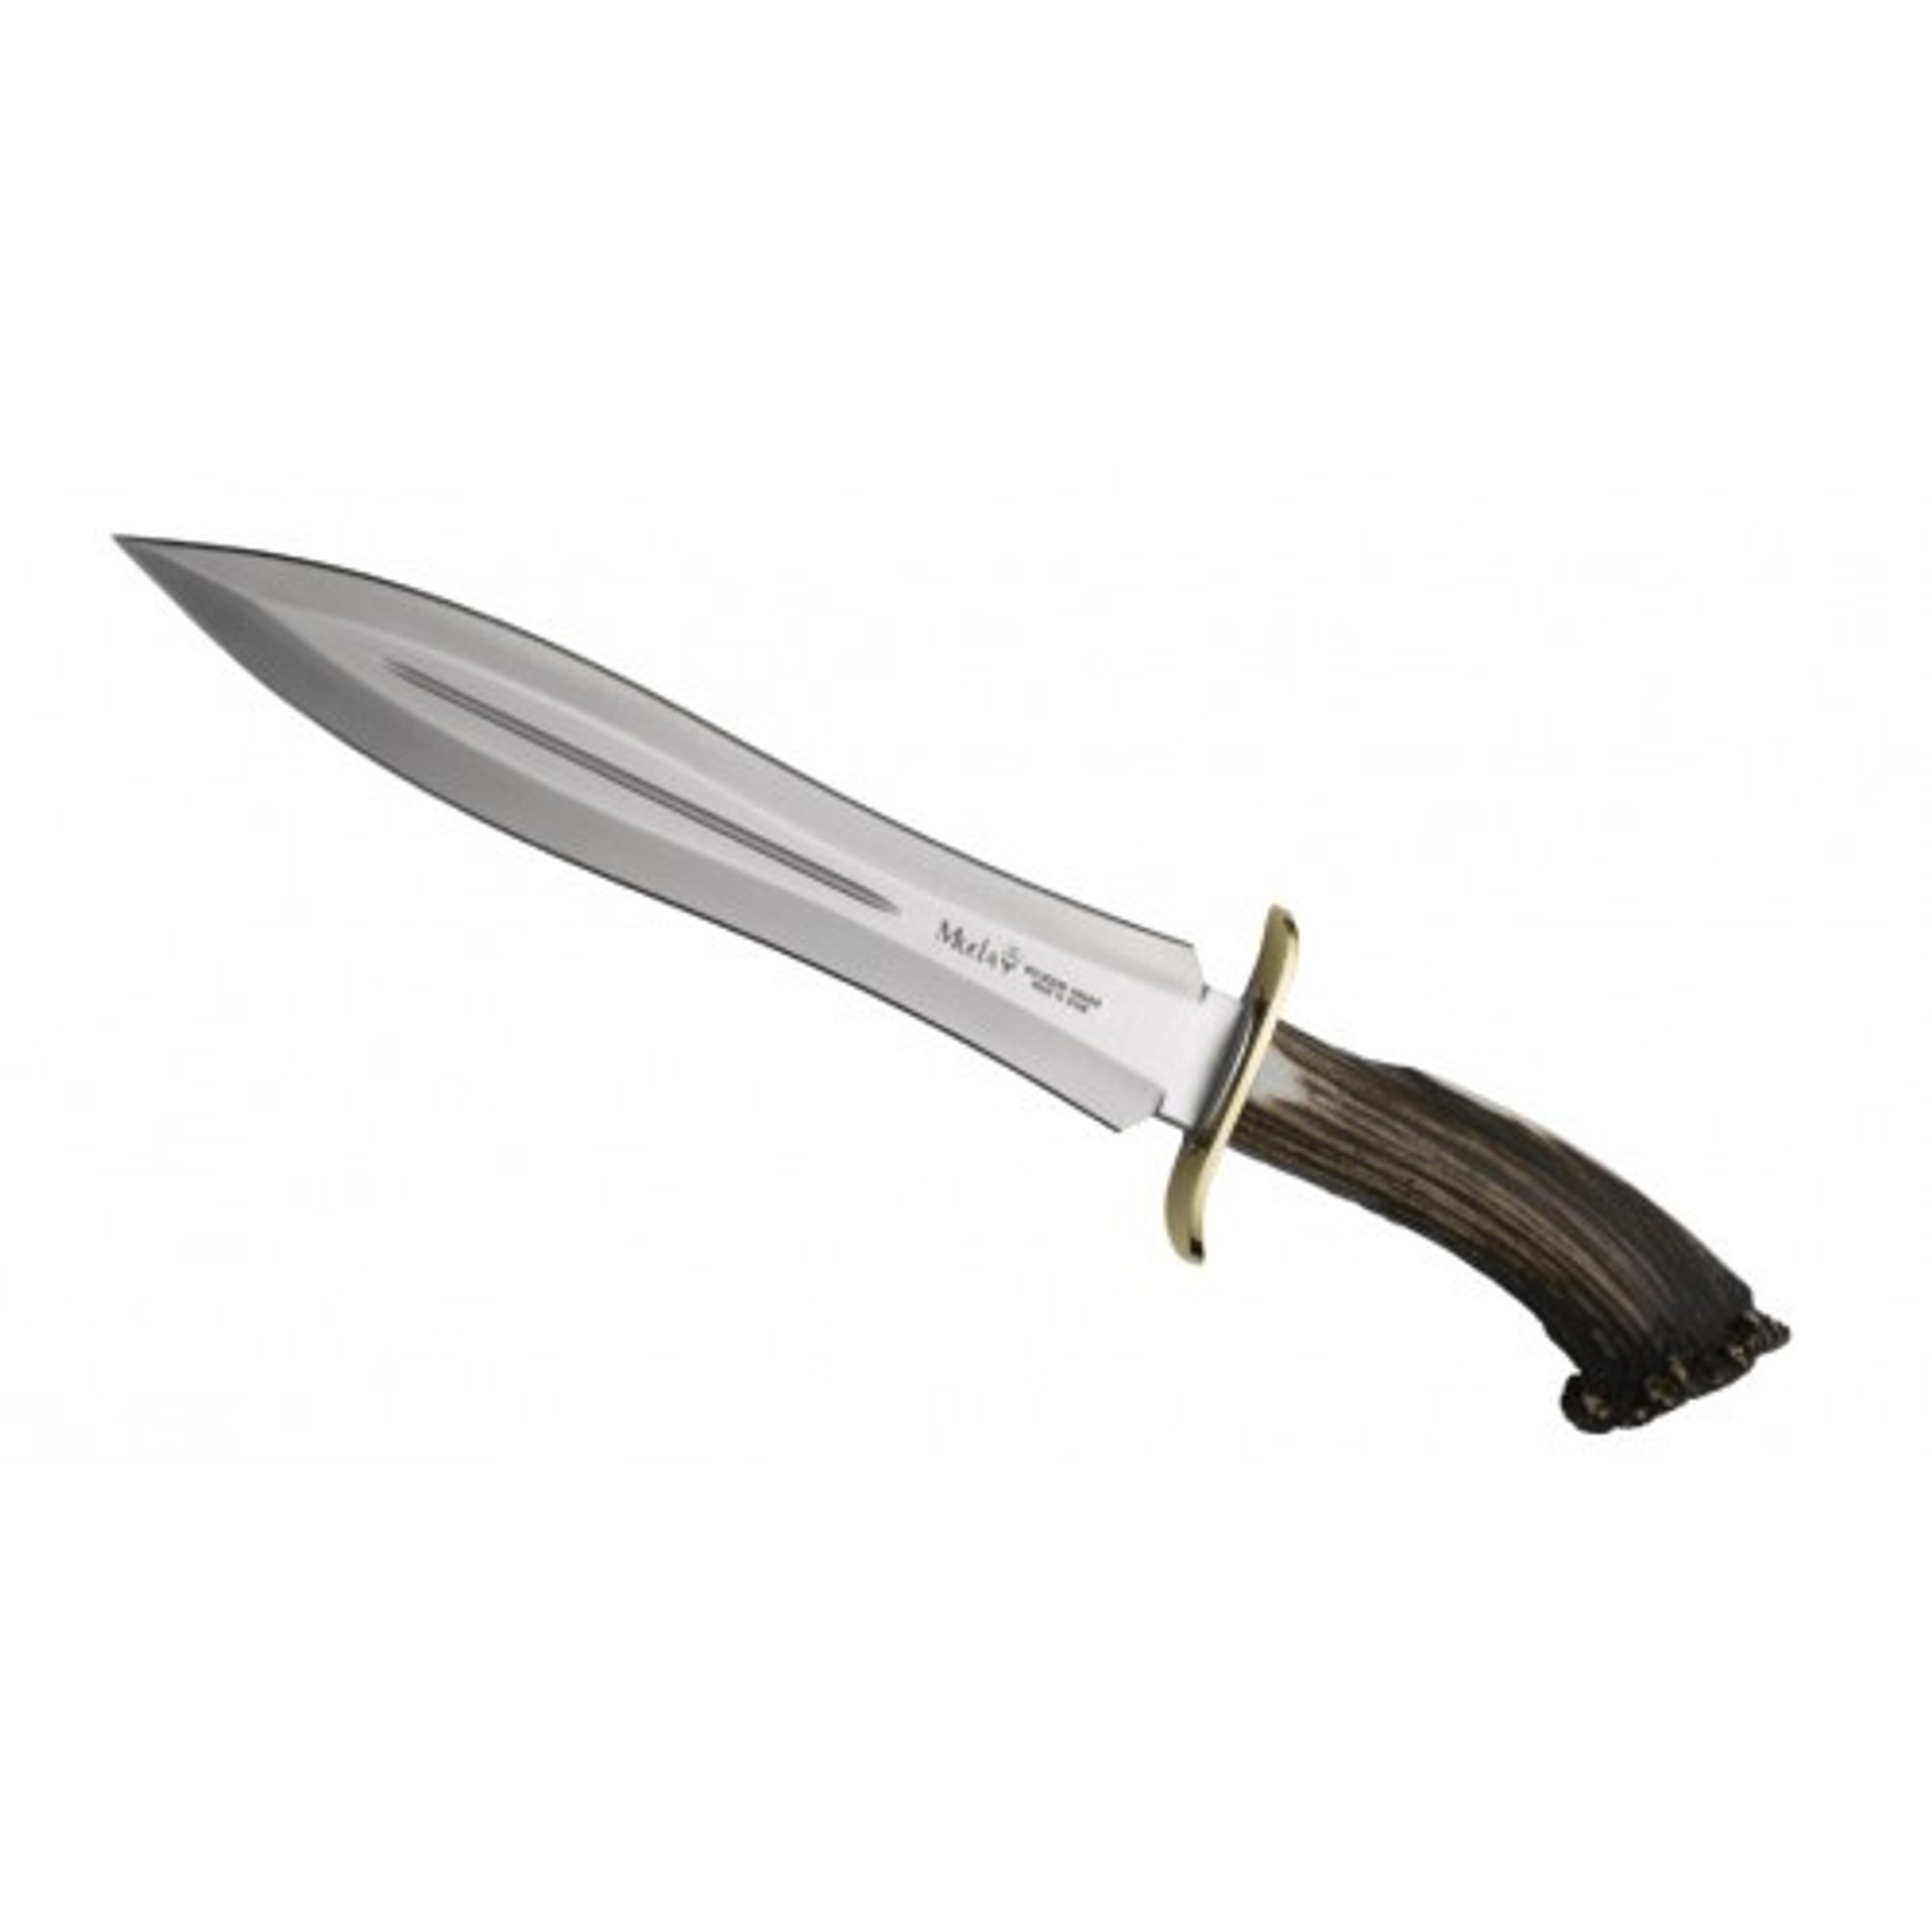 MUELA BW-24S, X50CrMoV15, 9-5/8" Fixed Blade Knife, Crown Deer Horn Handle